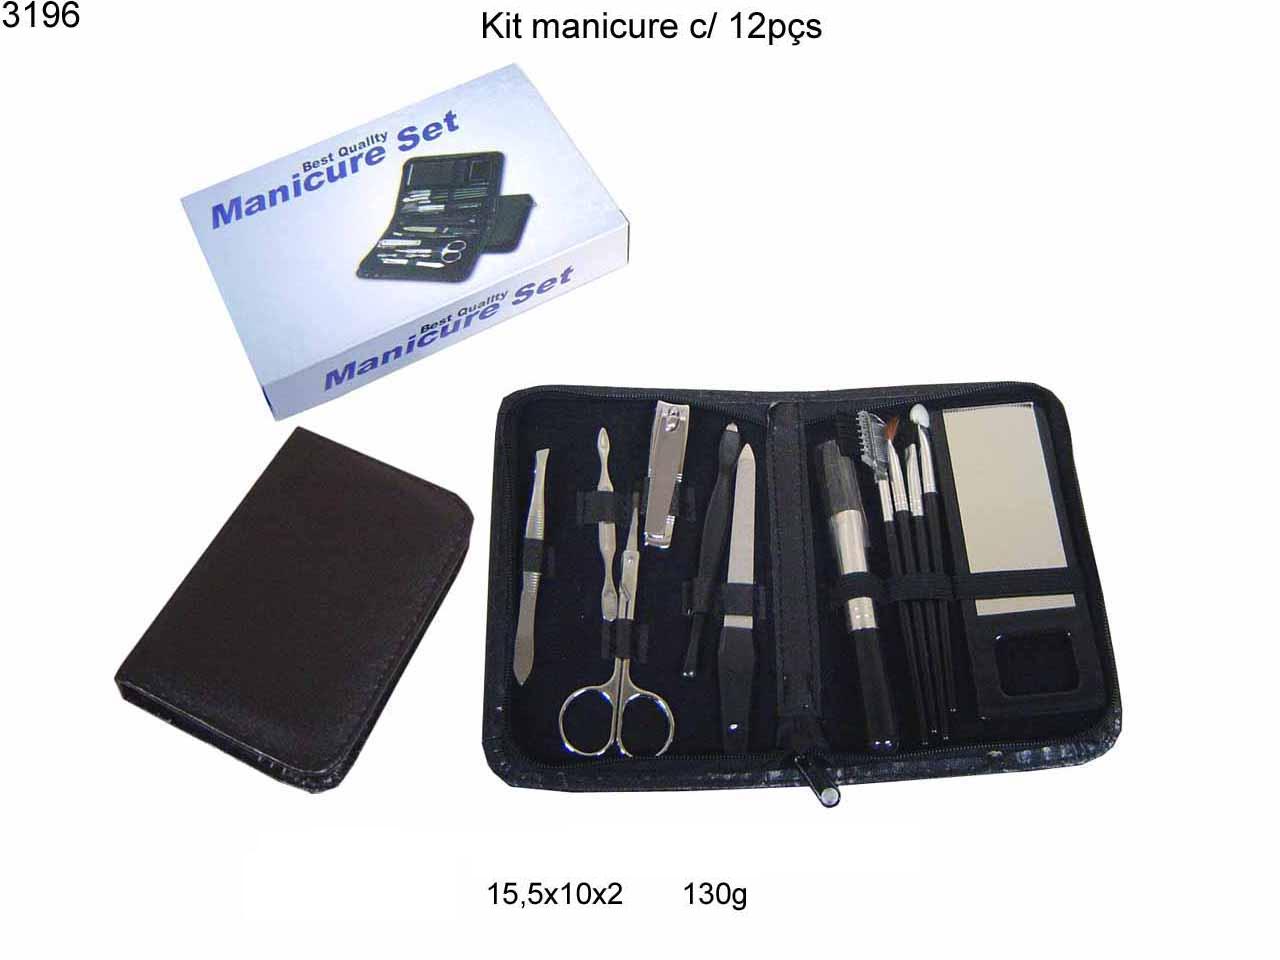 Kit manicure c/ 12  pcs (3196)